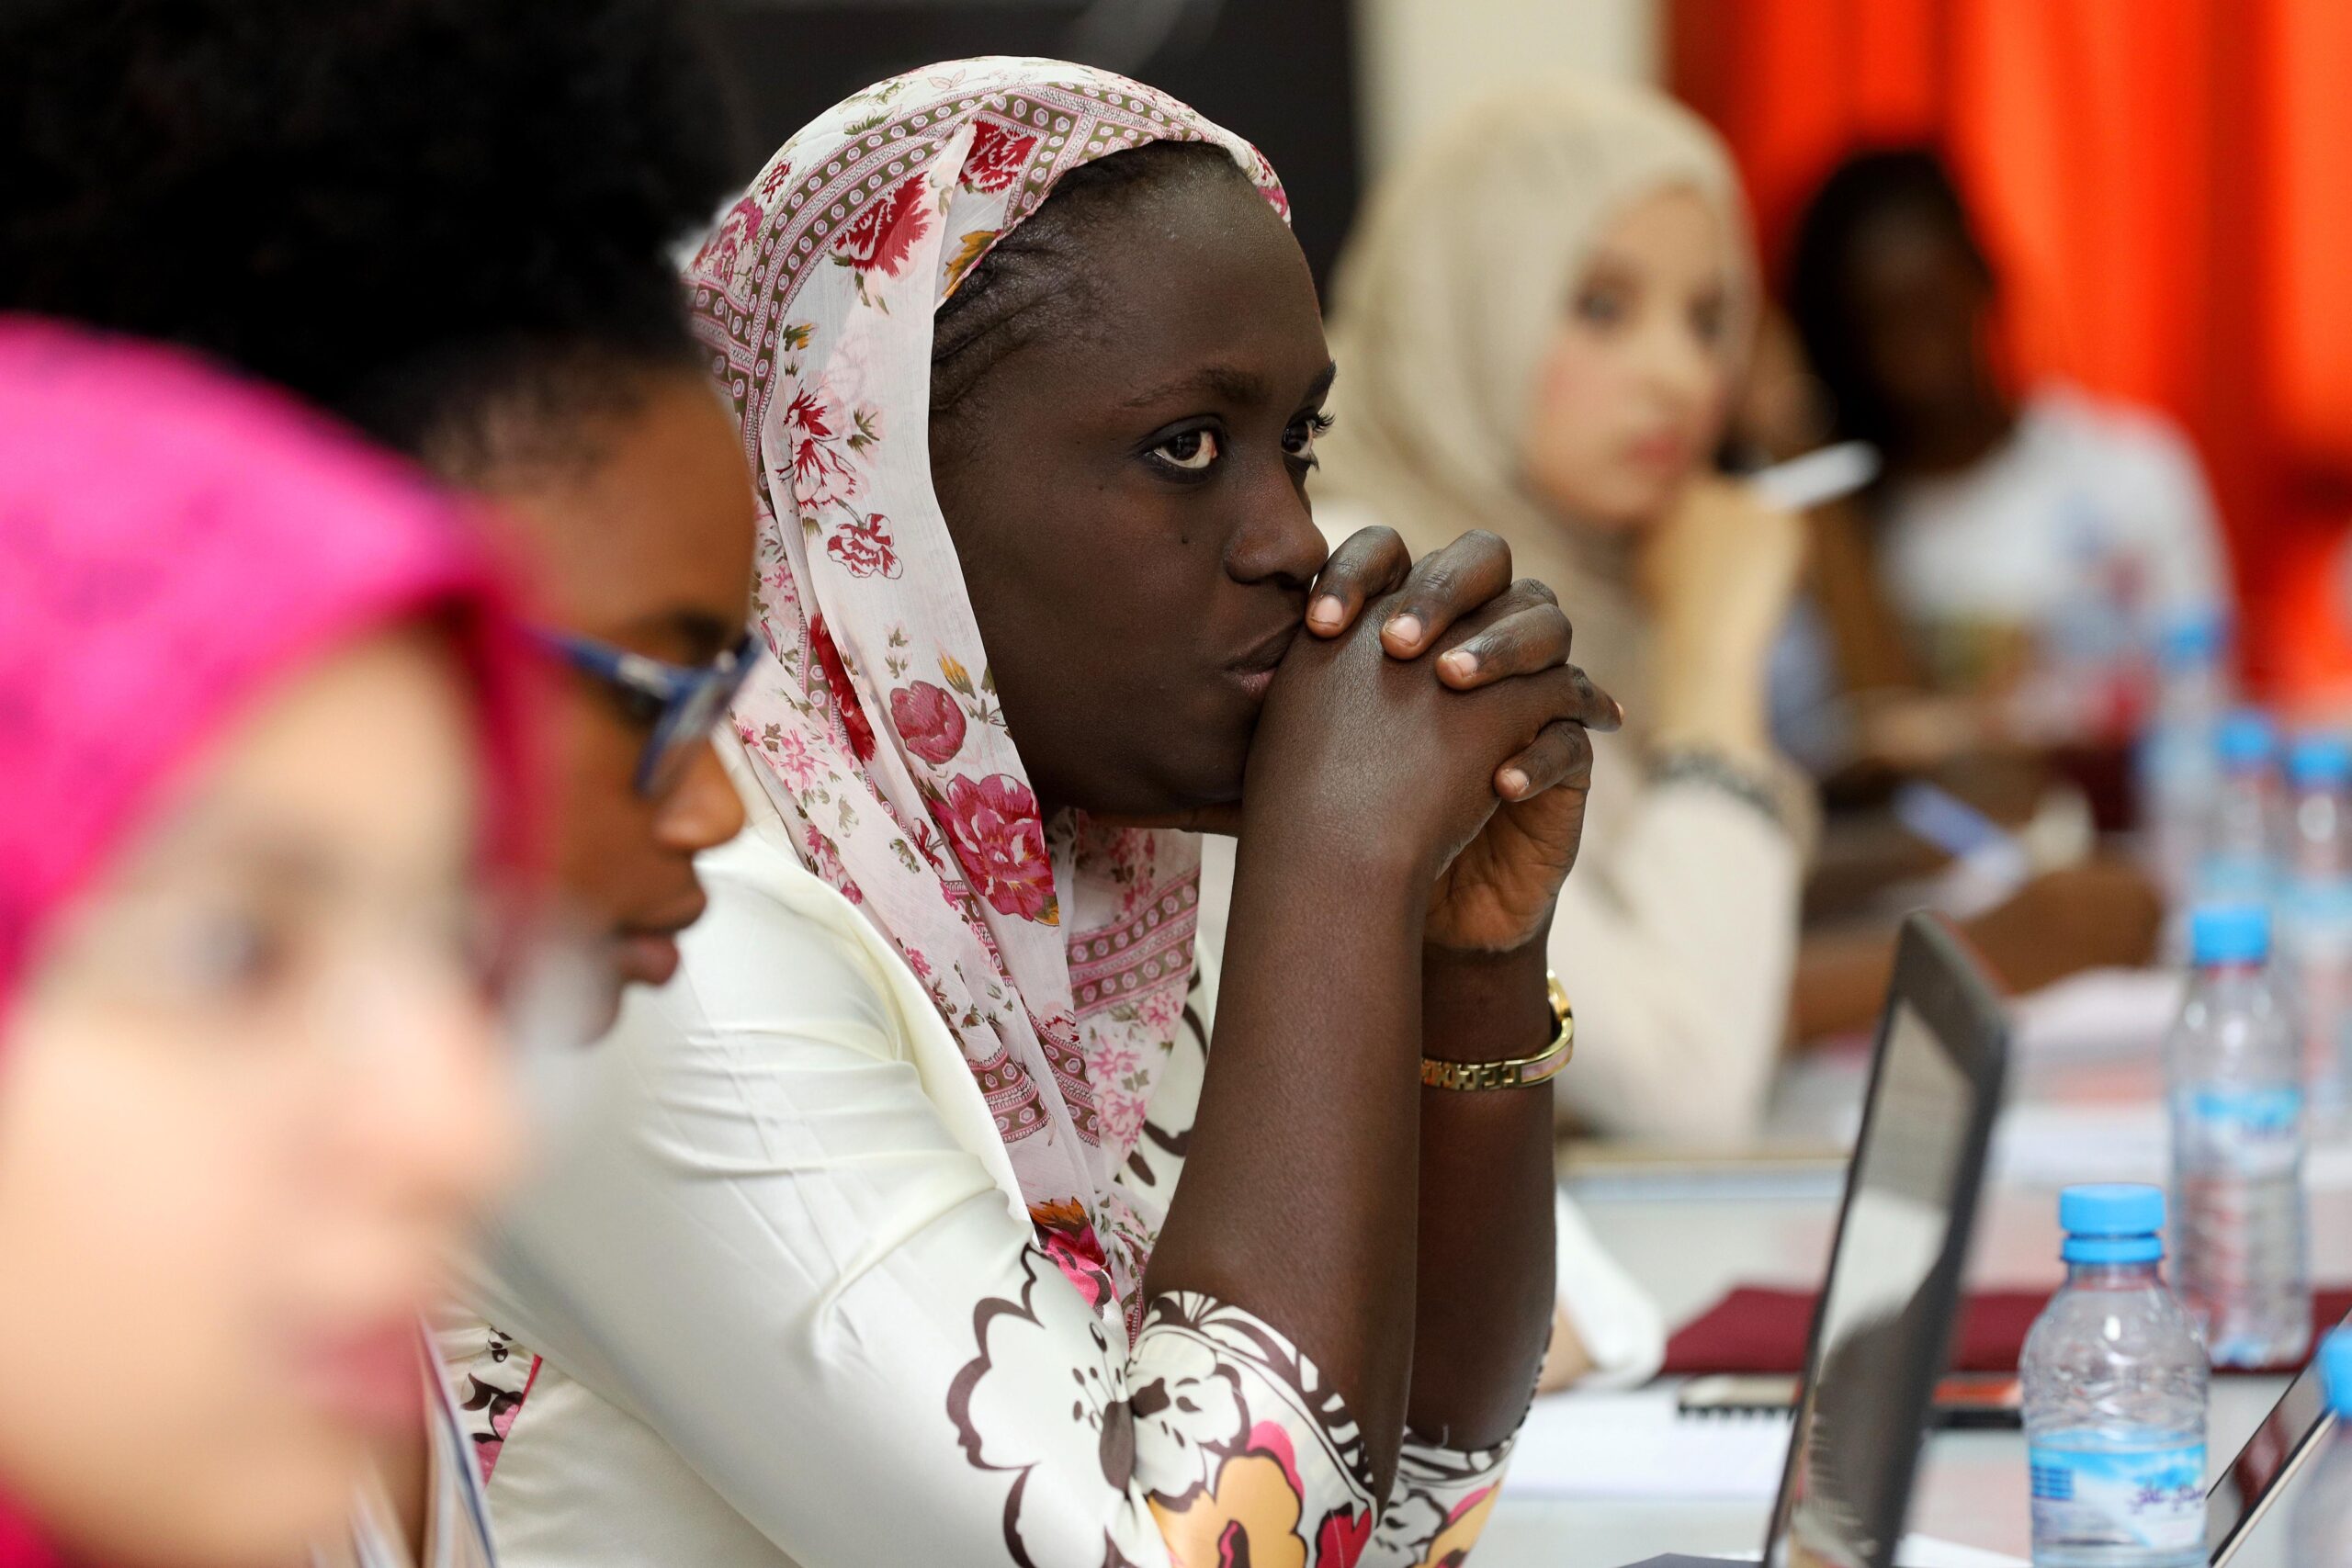 اللجنة الاقتصادية لإفريقيا: البلدان الإفريقية مطالبة بتوفير تعليم أفضل للنساء ما بعد الابتدائي